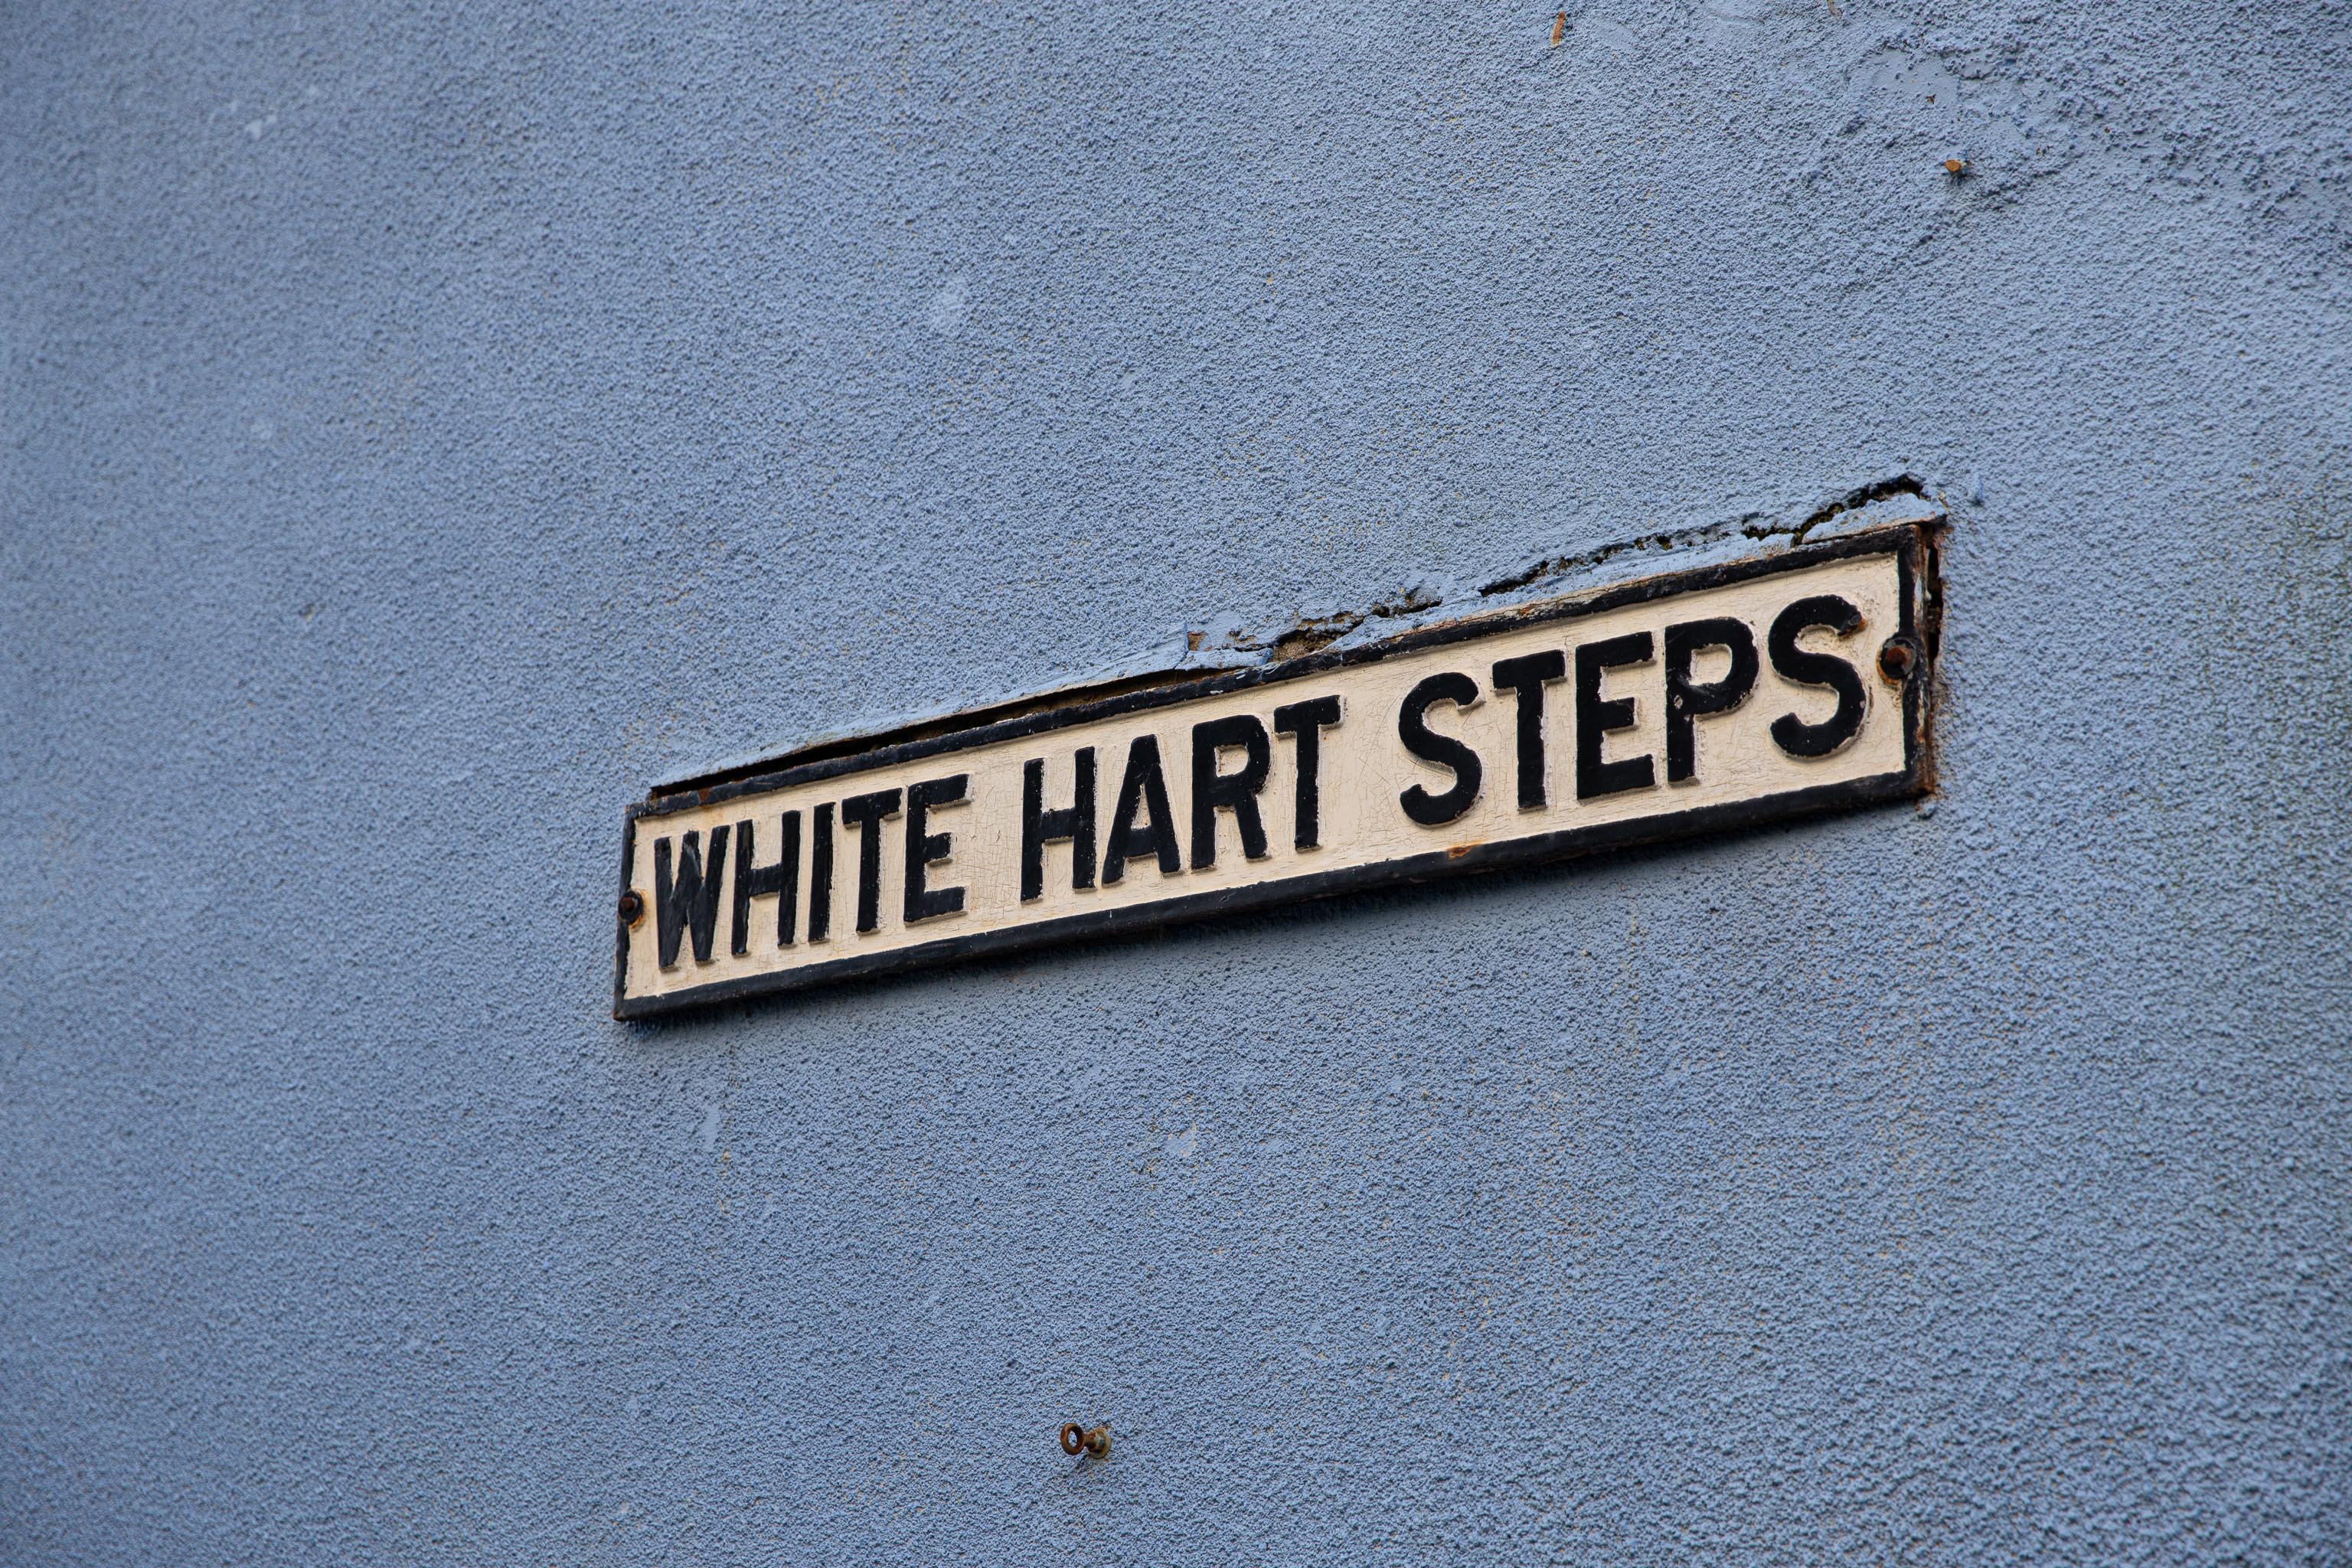 White Hart Steps
